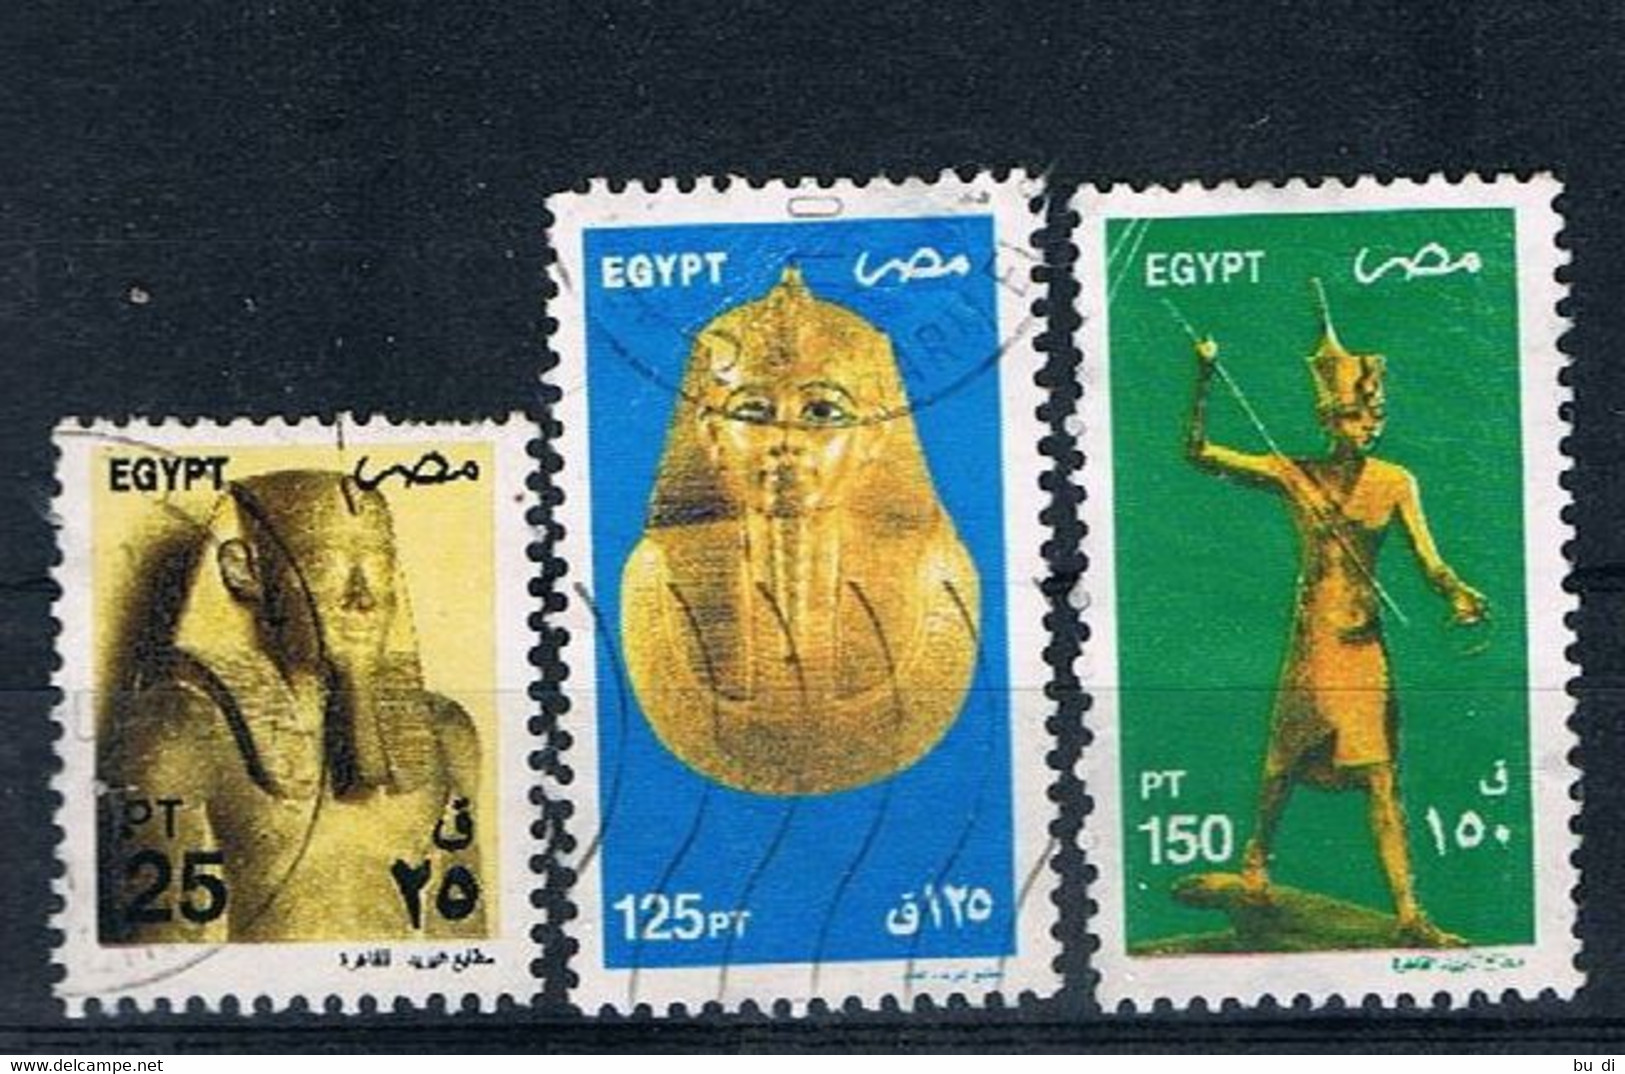 Ägypten - Egypt - 2081 2089 2090 - ägyptische Kunst - Statue, Totenmaske, U.a. Tut-ench Amun - Gebraucht